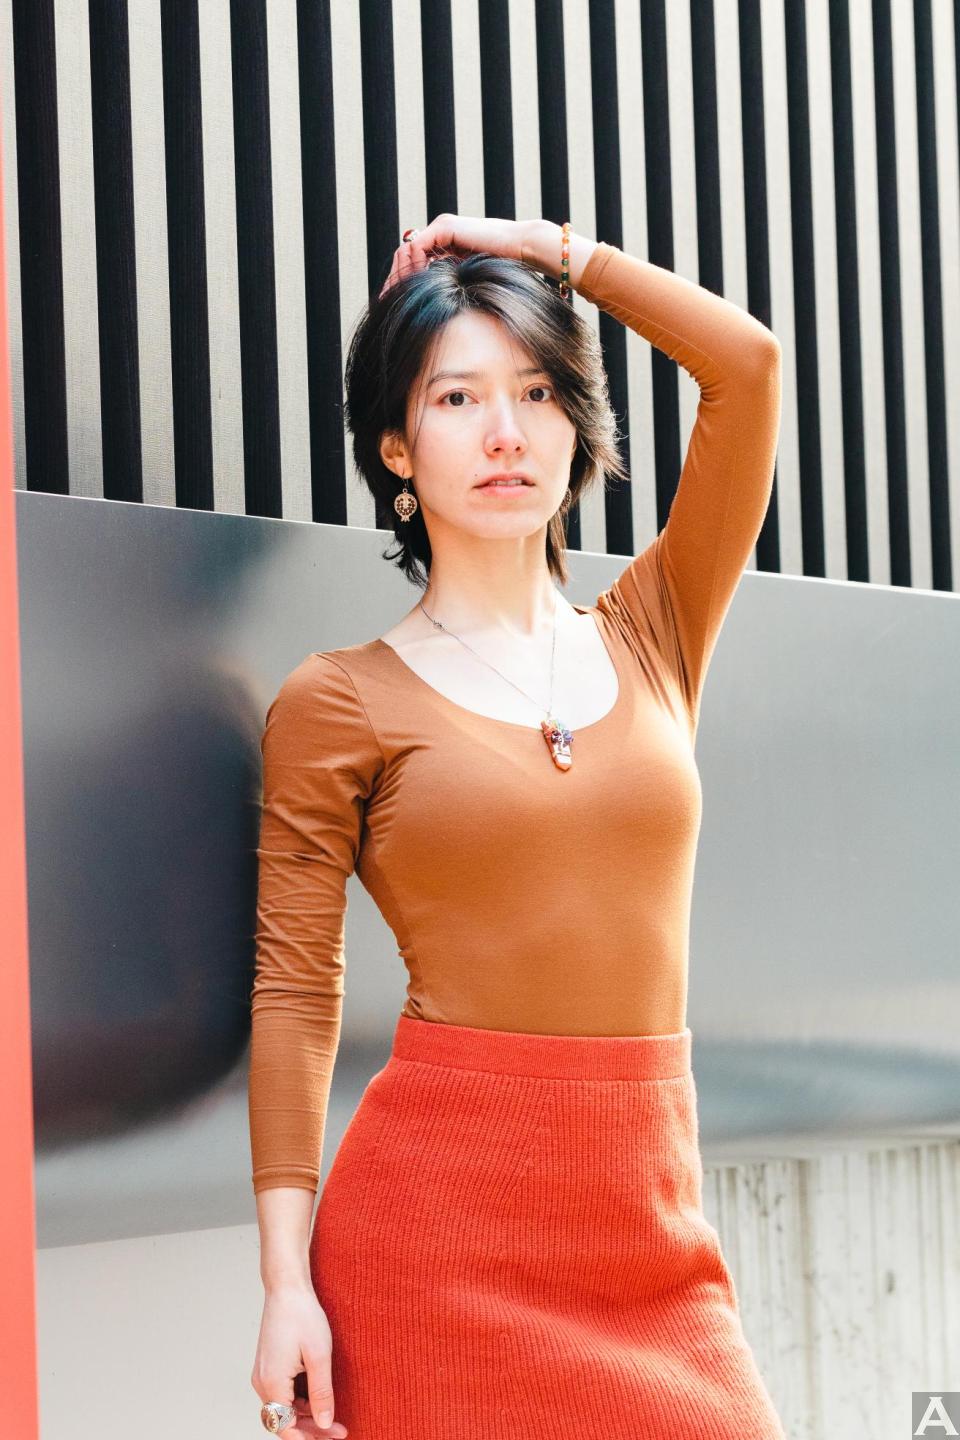 東京外国人モデル事務所アクアモデル所属のアジア人モデルのウミ